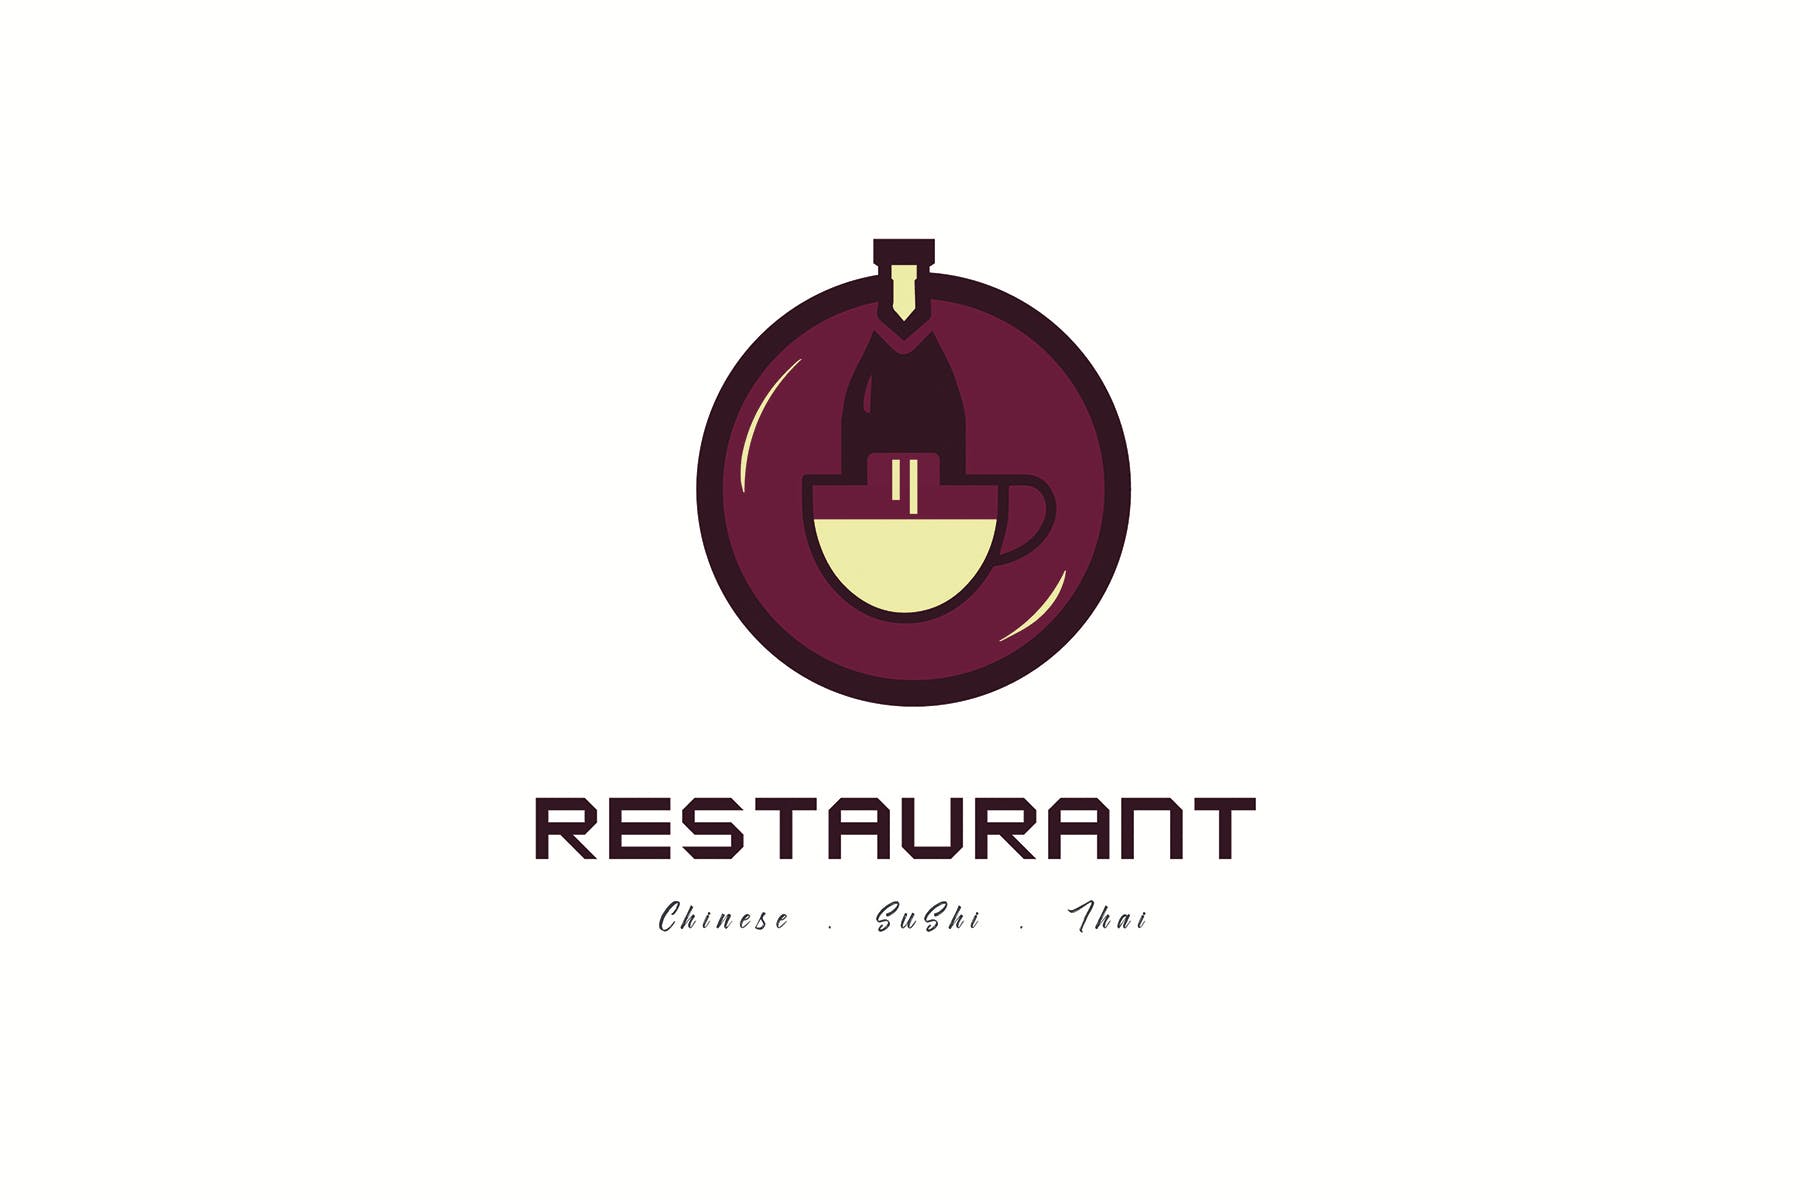 餐馆定制Logo设计素材库精选模板 Restaurant Logo Templates插图(1)